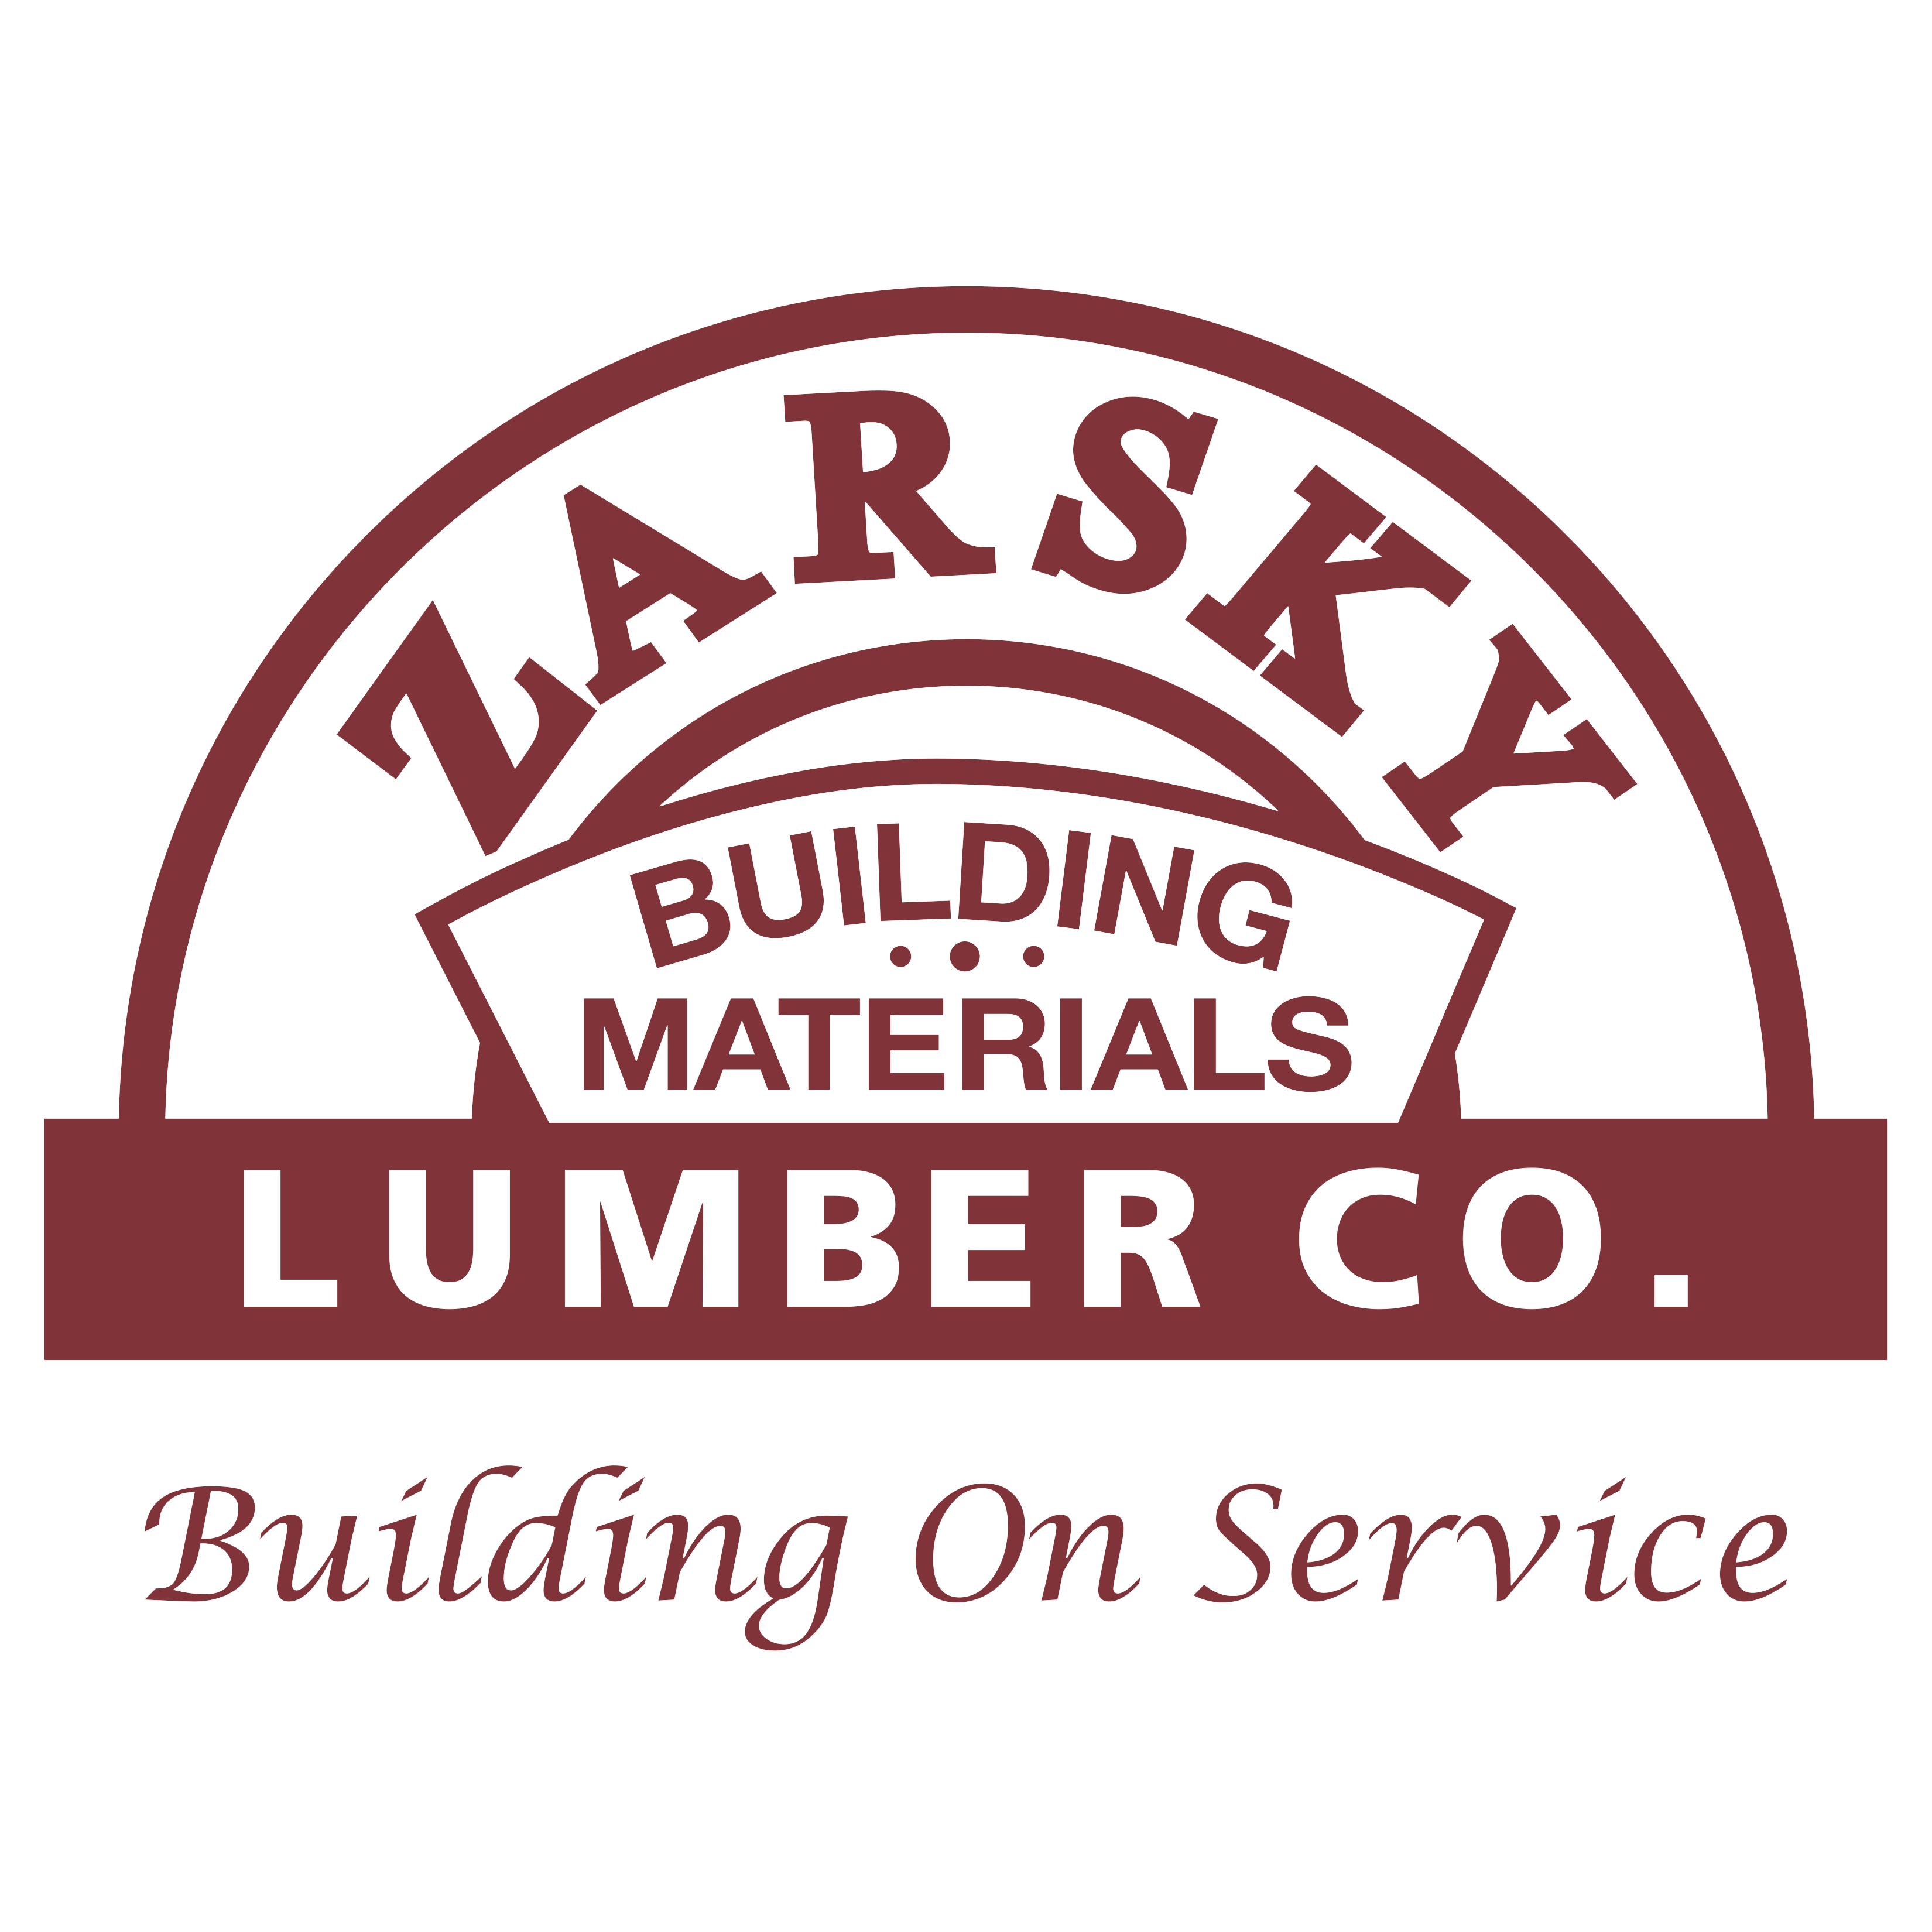 Zarsky Lumber Co.